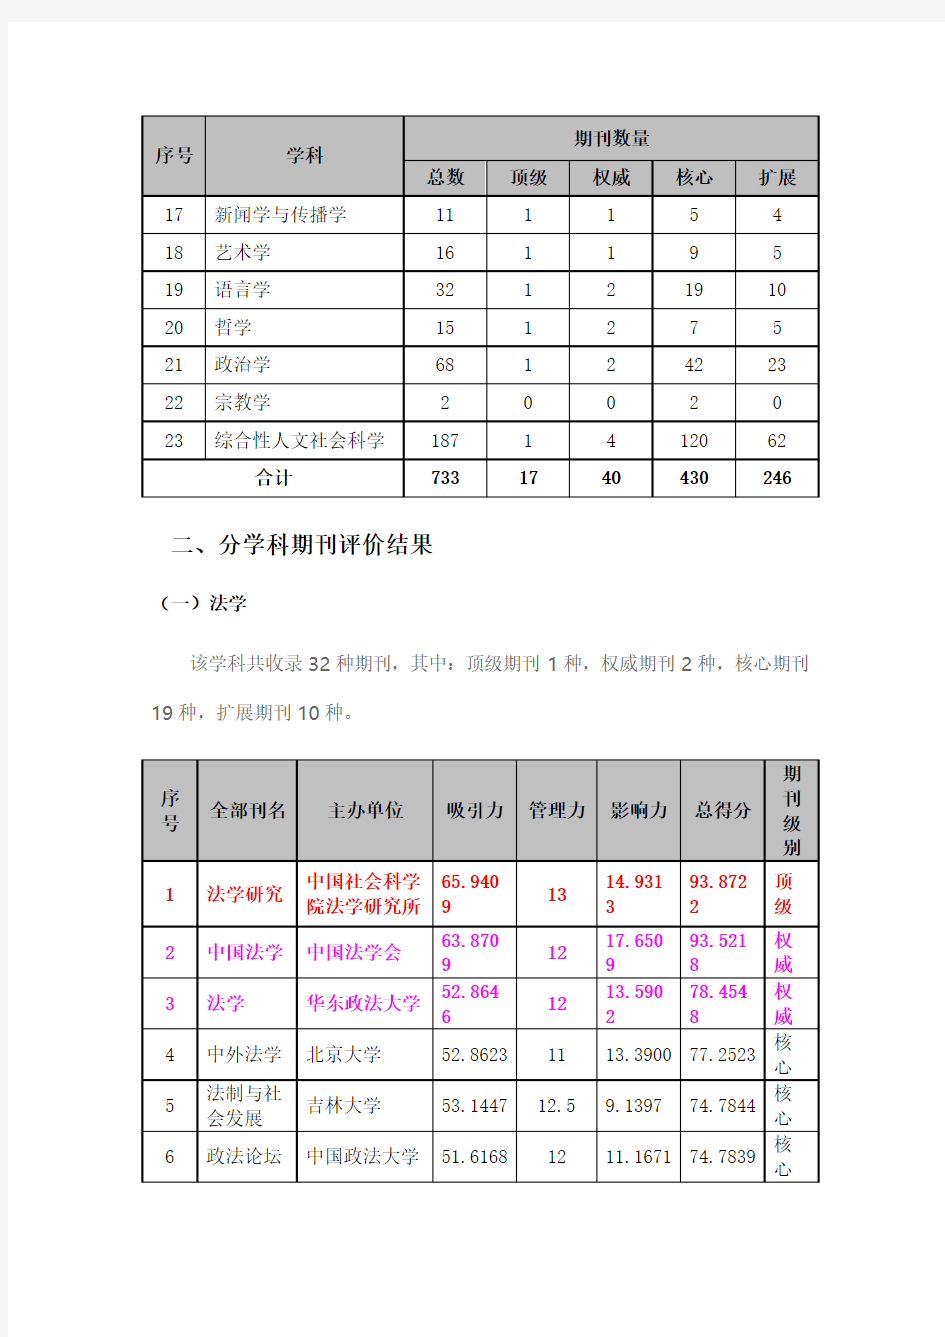 《中国人文社会科学期刊评价报告(2014年)》